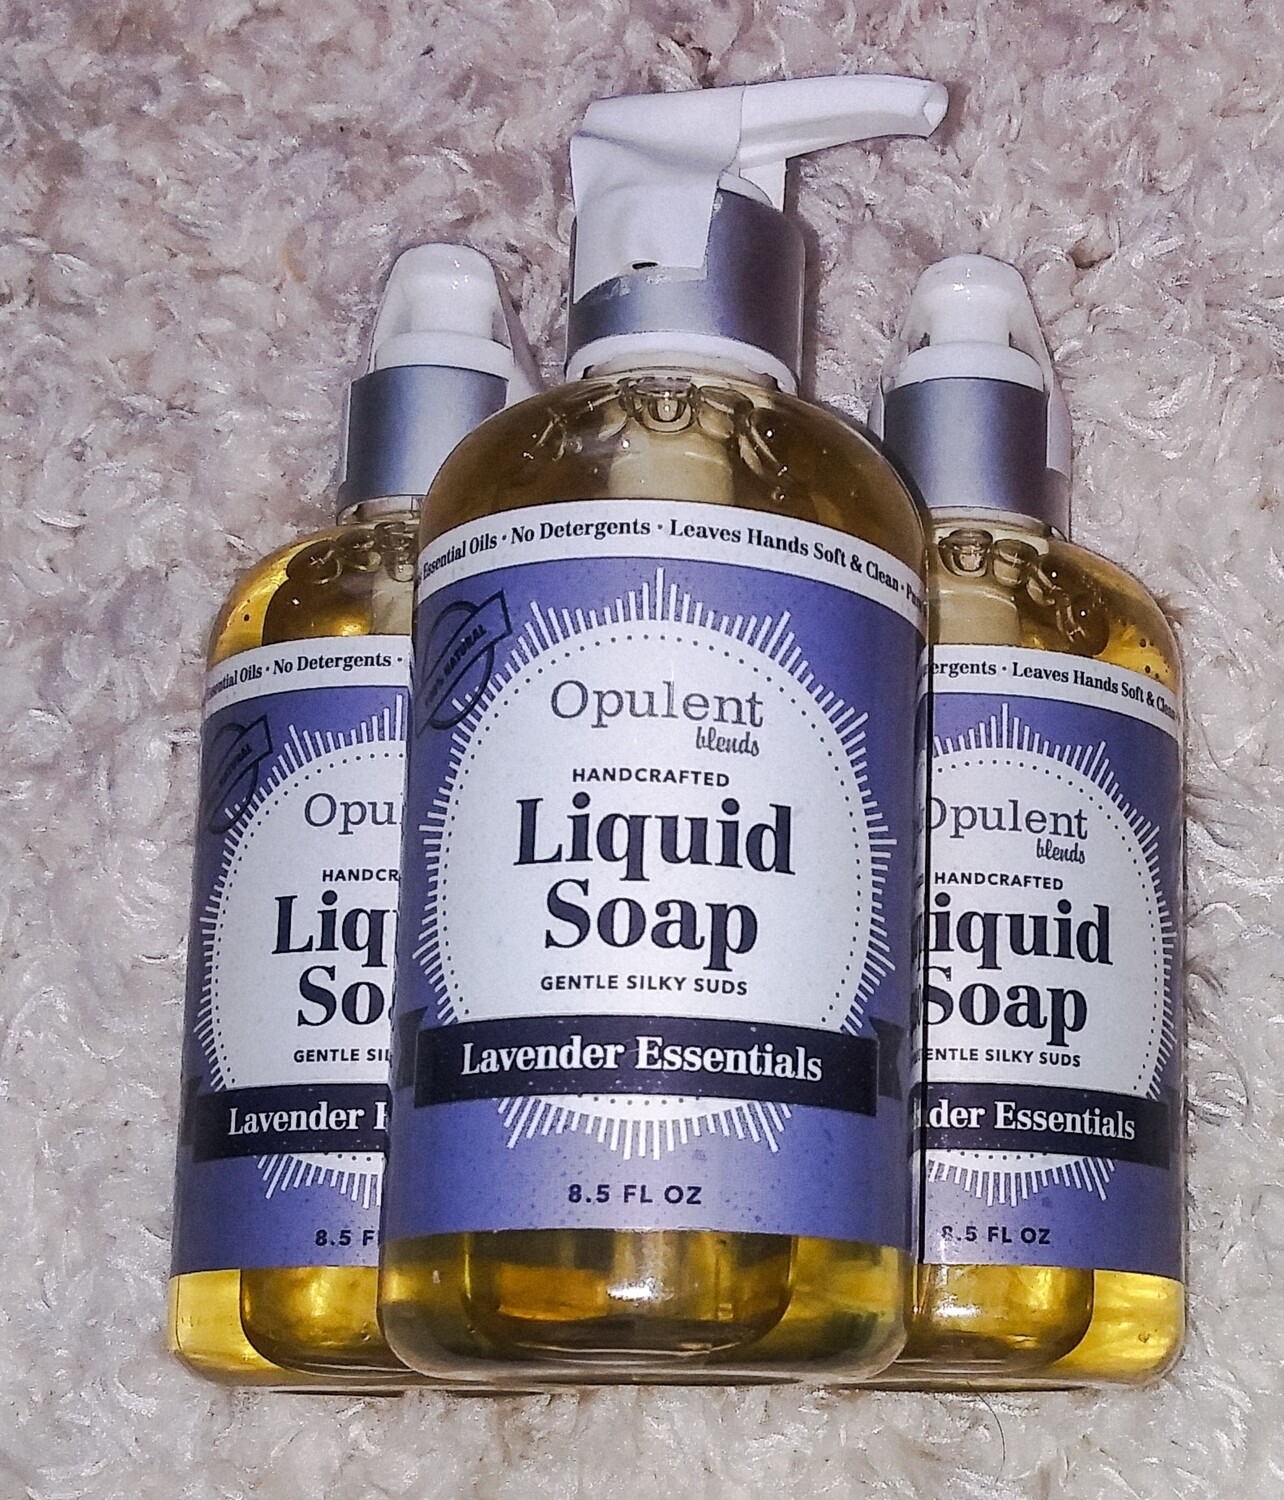 All natural liquid hand soaps